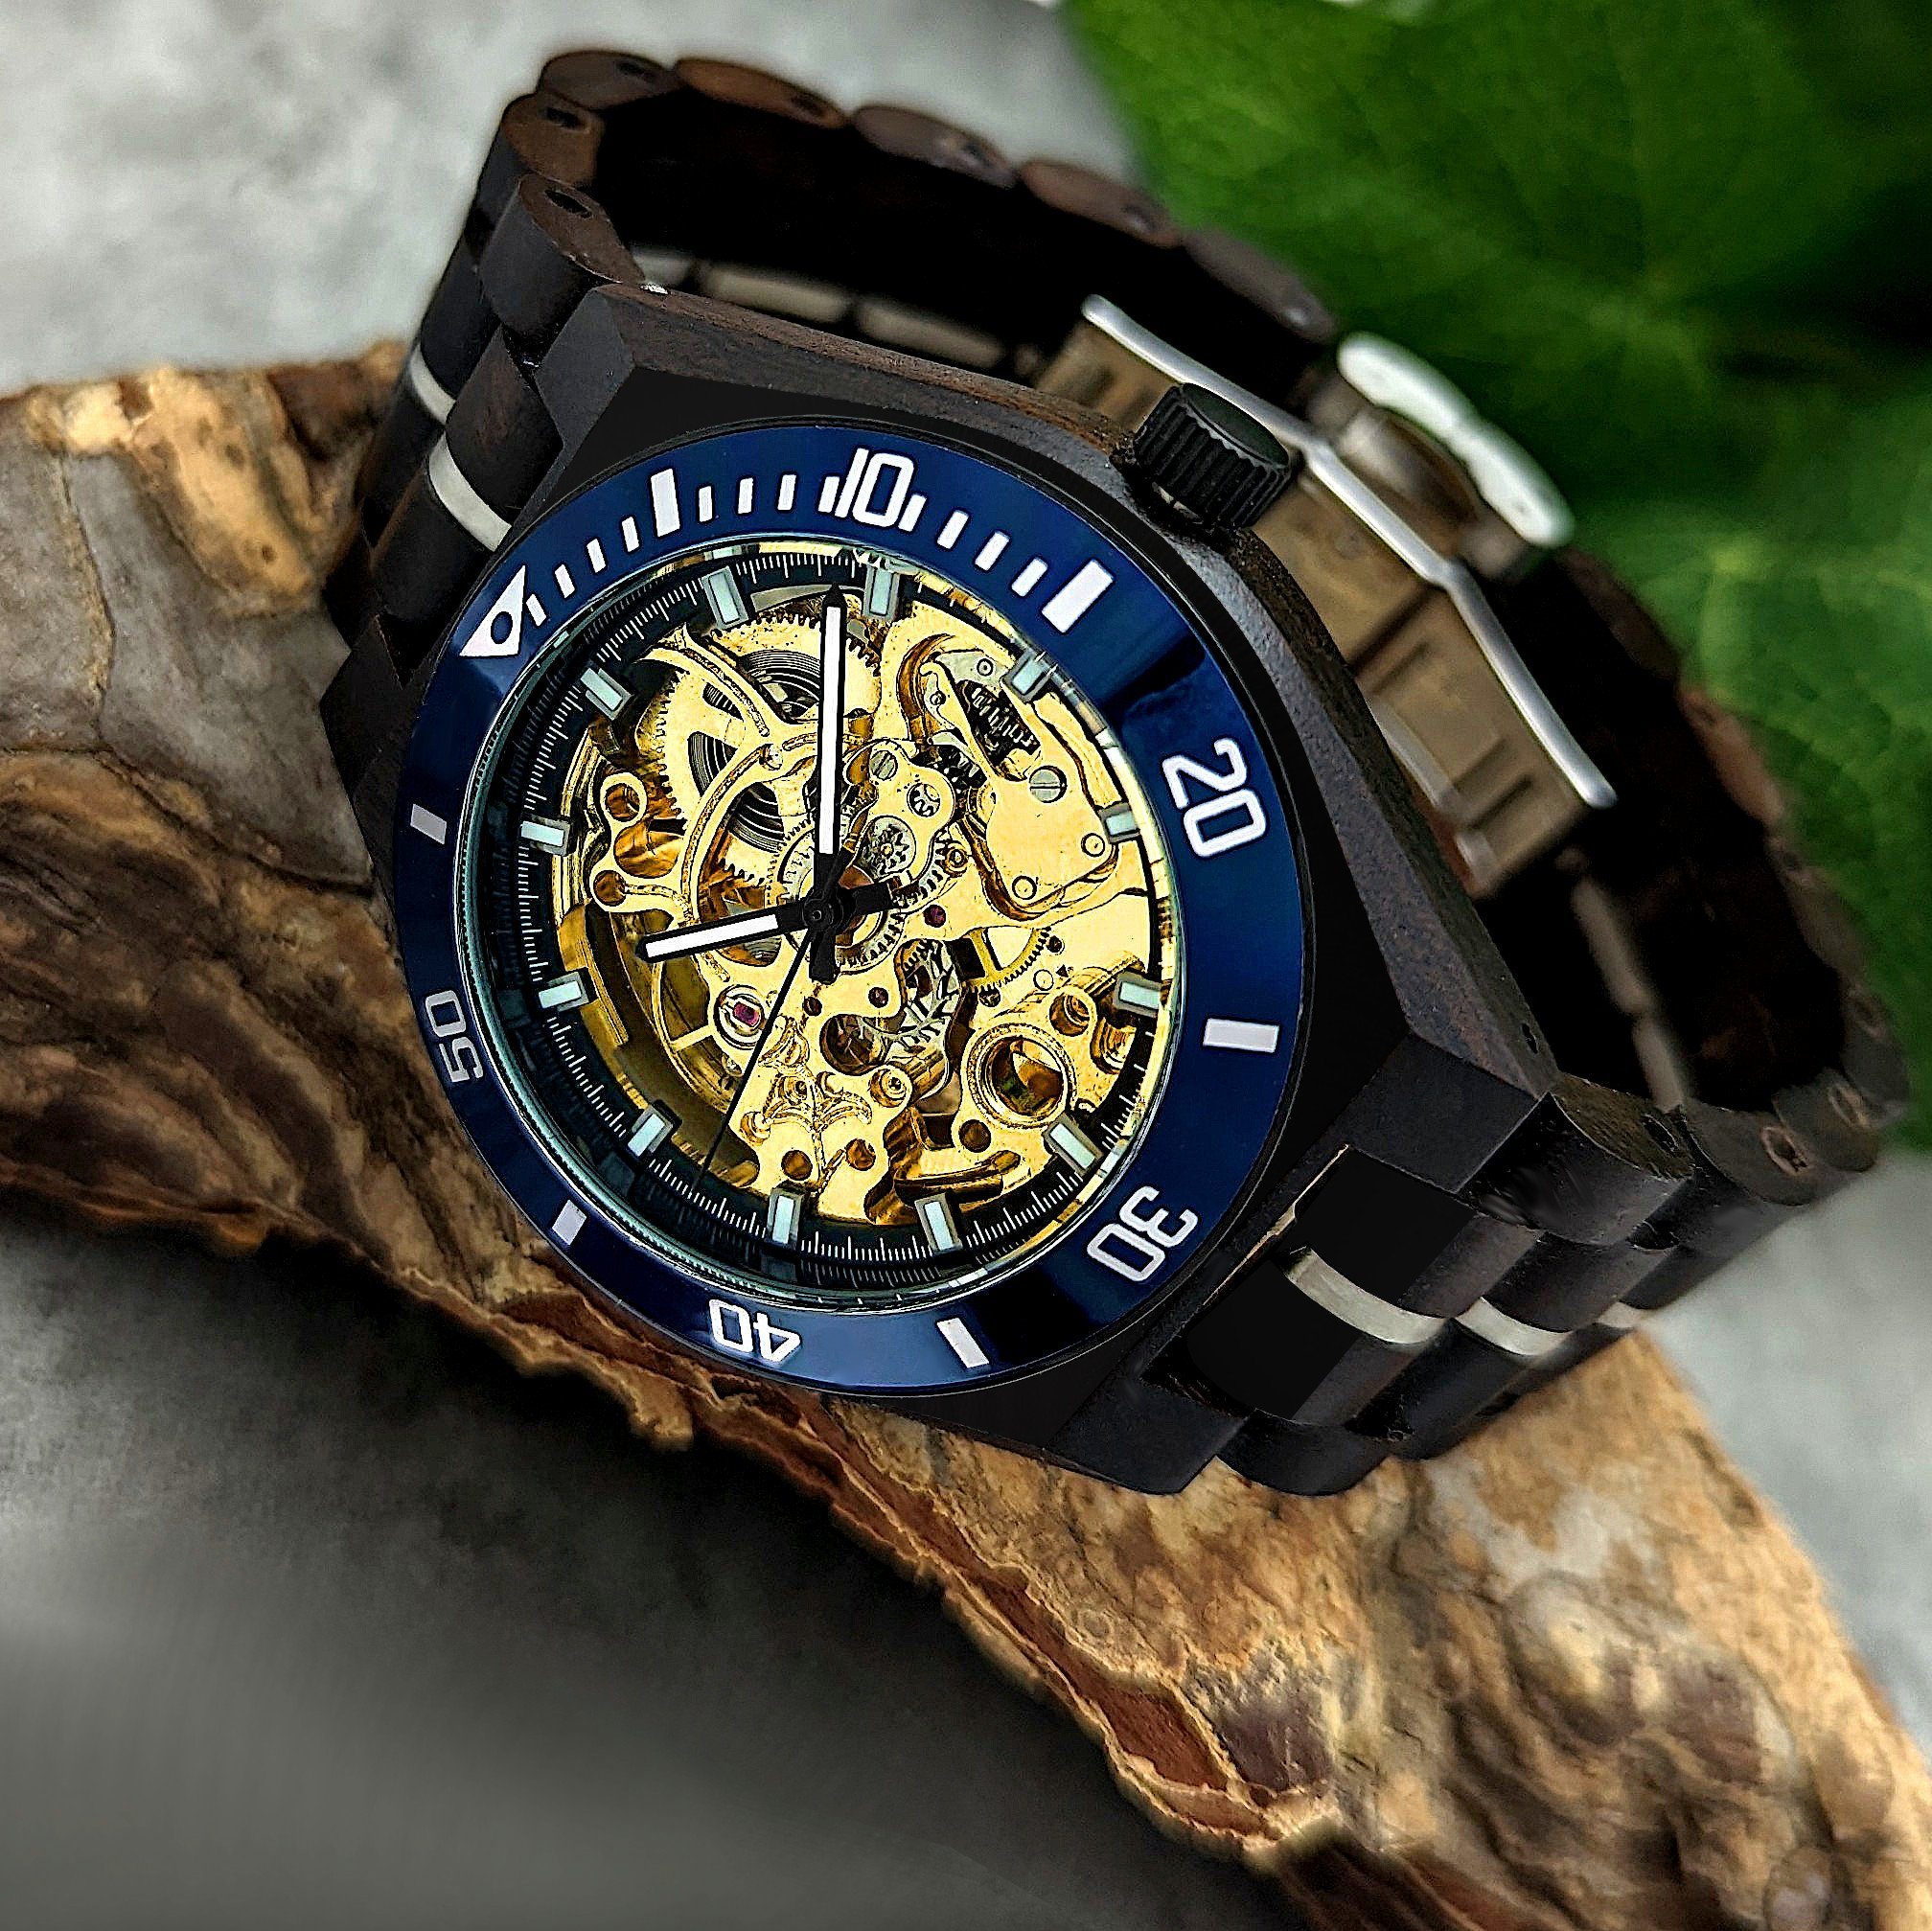 & Holz gold, Herren Uhr DELITZSCH Automatikuhr blau Armband in schwarz, Holzwerk Edelstahl